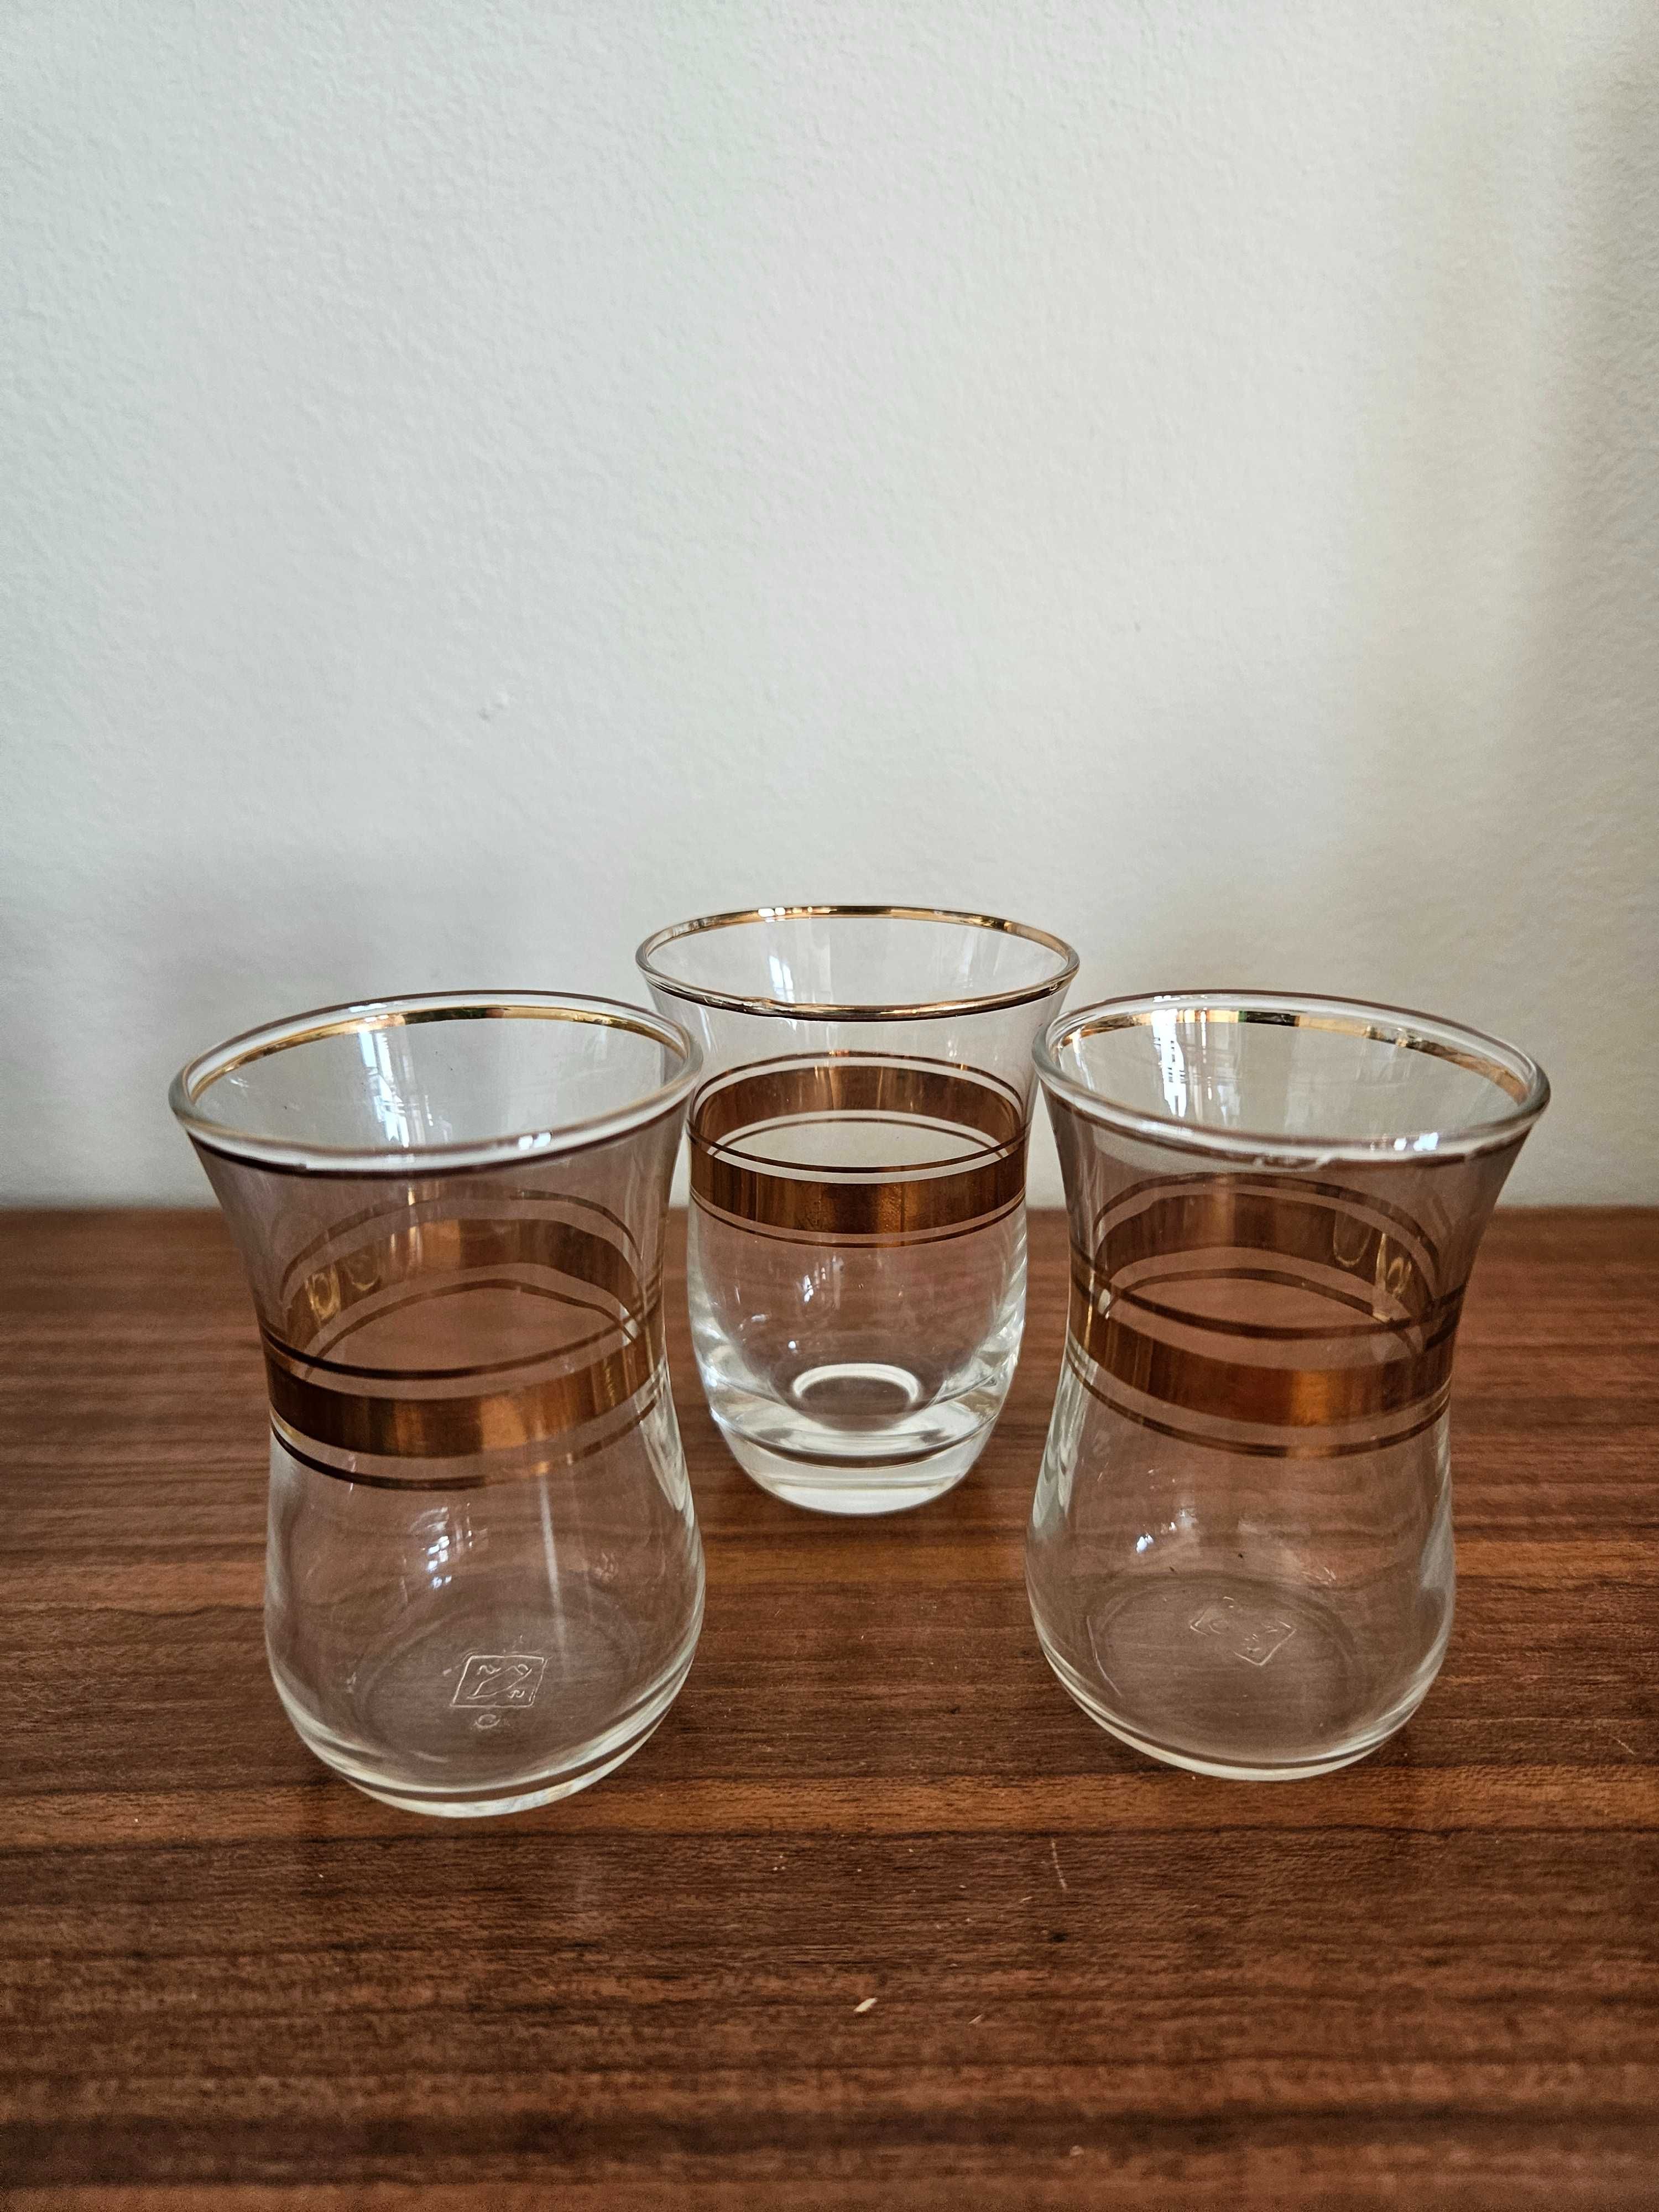 Lote - copos pequenos de vidro - aguardente/licor